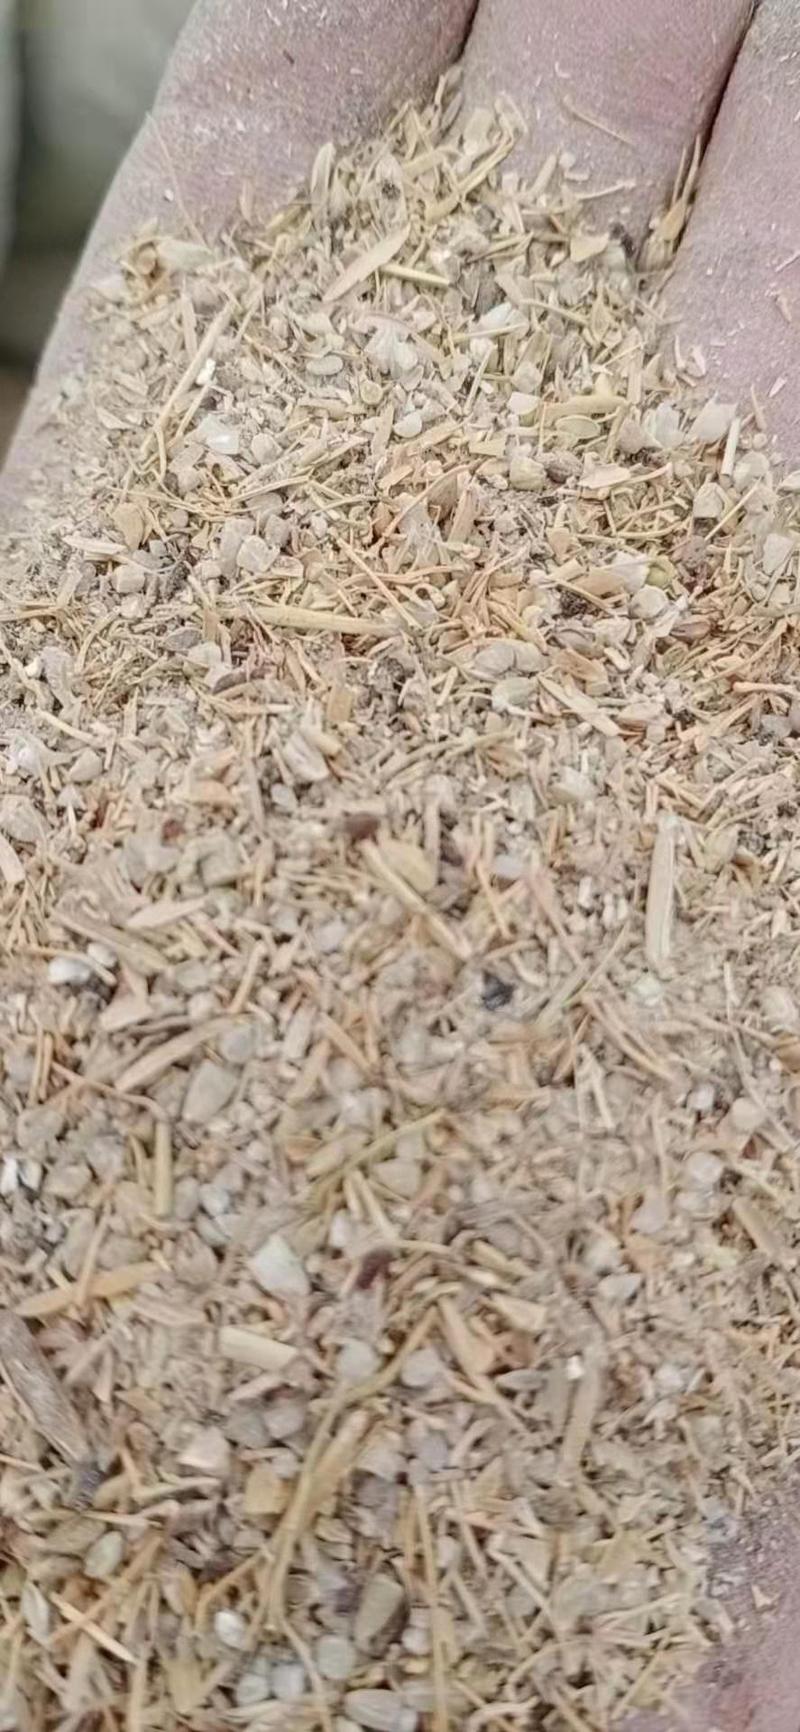 小袋装的碎米筛漏